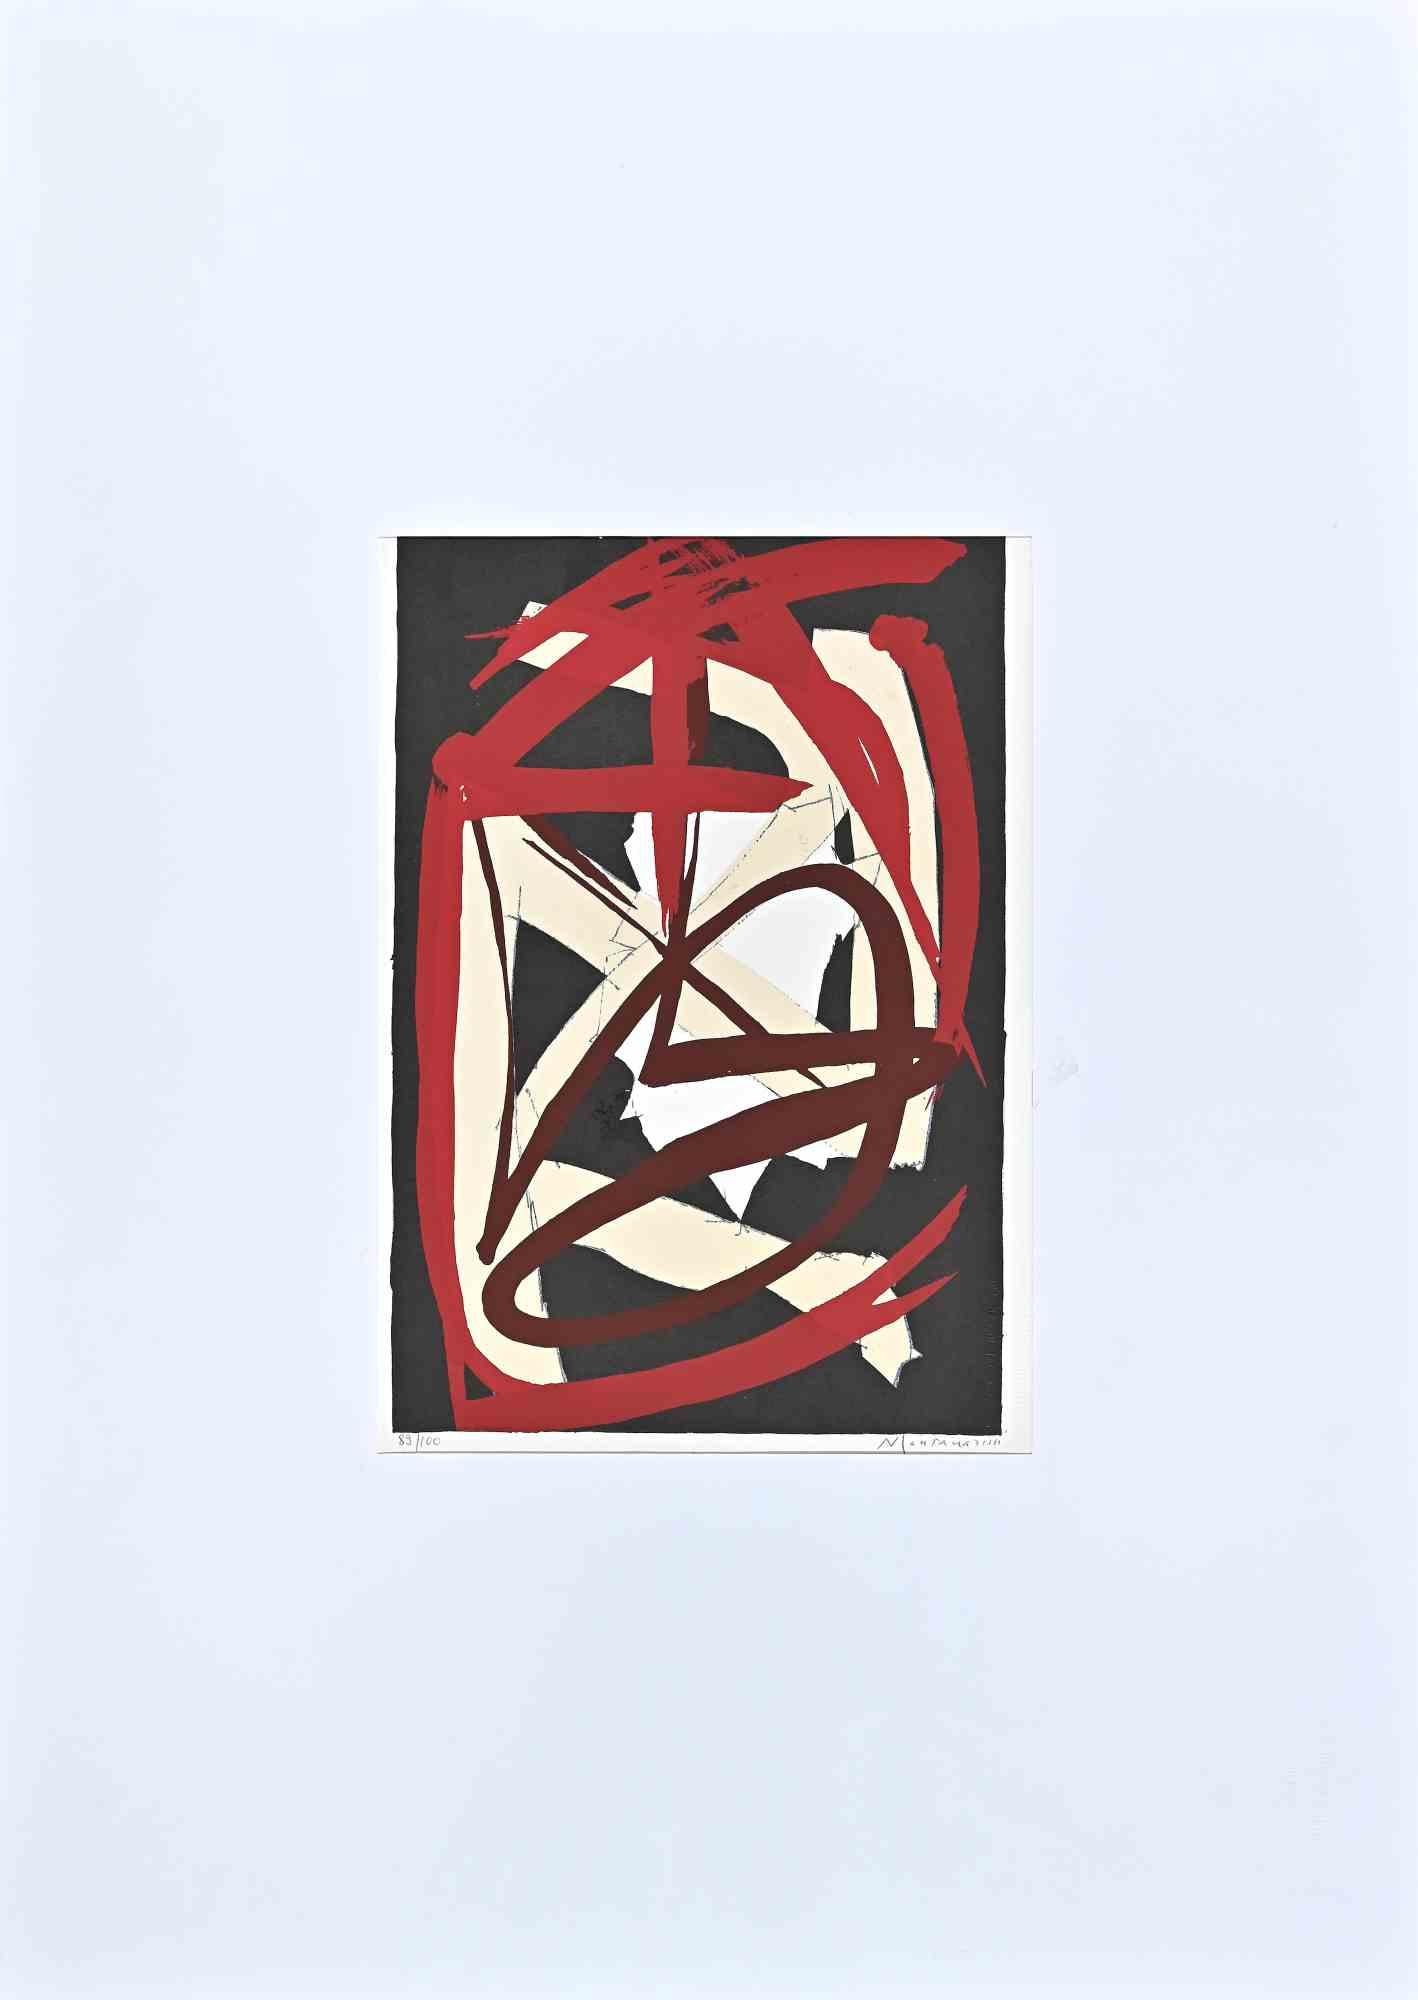 Composition abstraite est une lithographie originale réalisée par Luigi Montanarini en 1973.

Édition limitée à 100 exemplaires, éditeur "La Nuova Foglio SPA".

Très bon état sur un passe-partout en carton blanc (70x50 cm).

Signé et numéroté à la